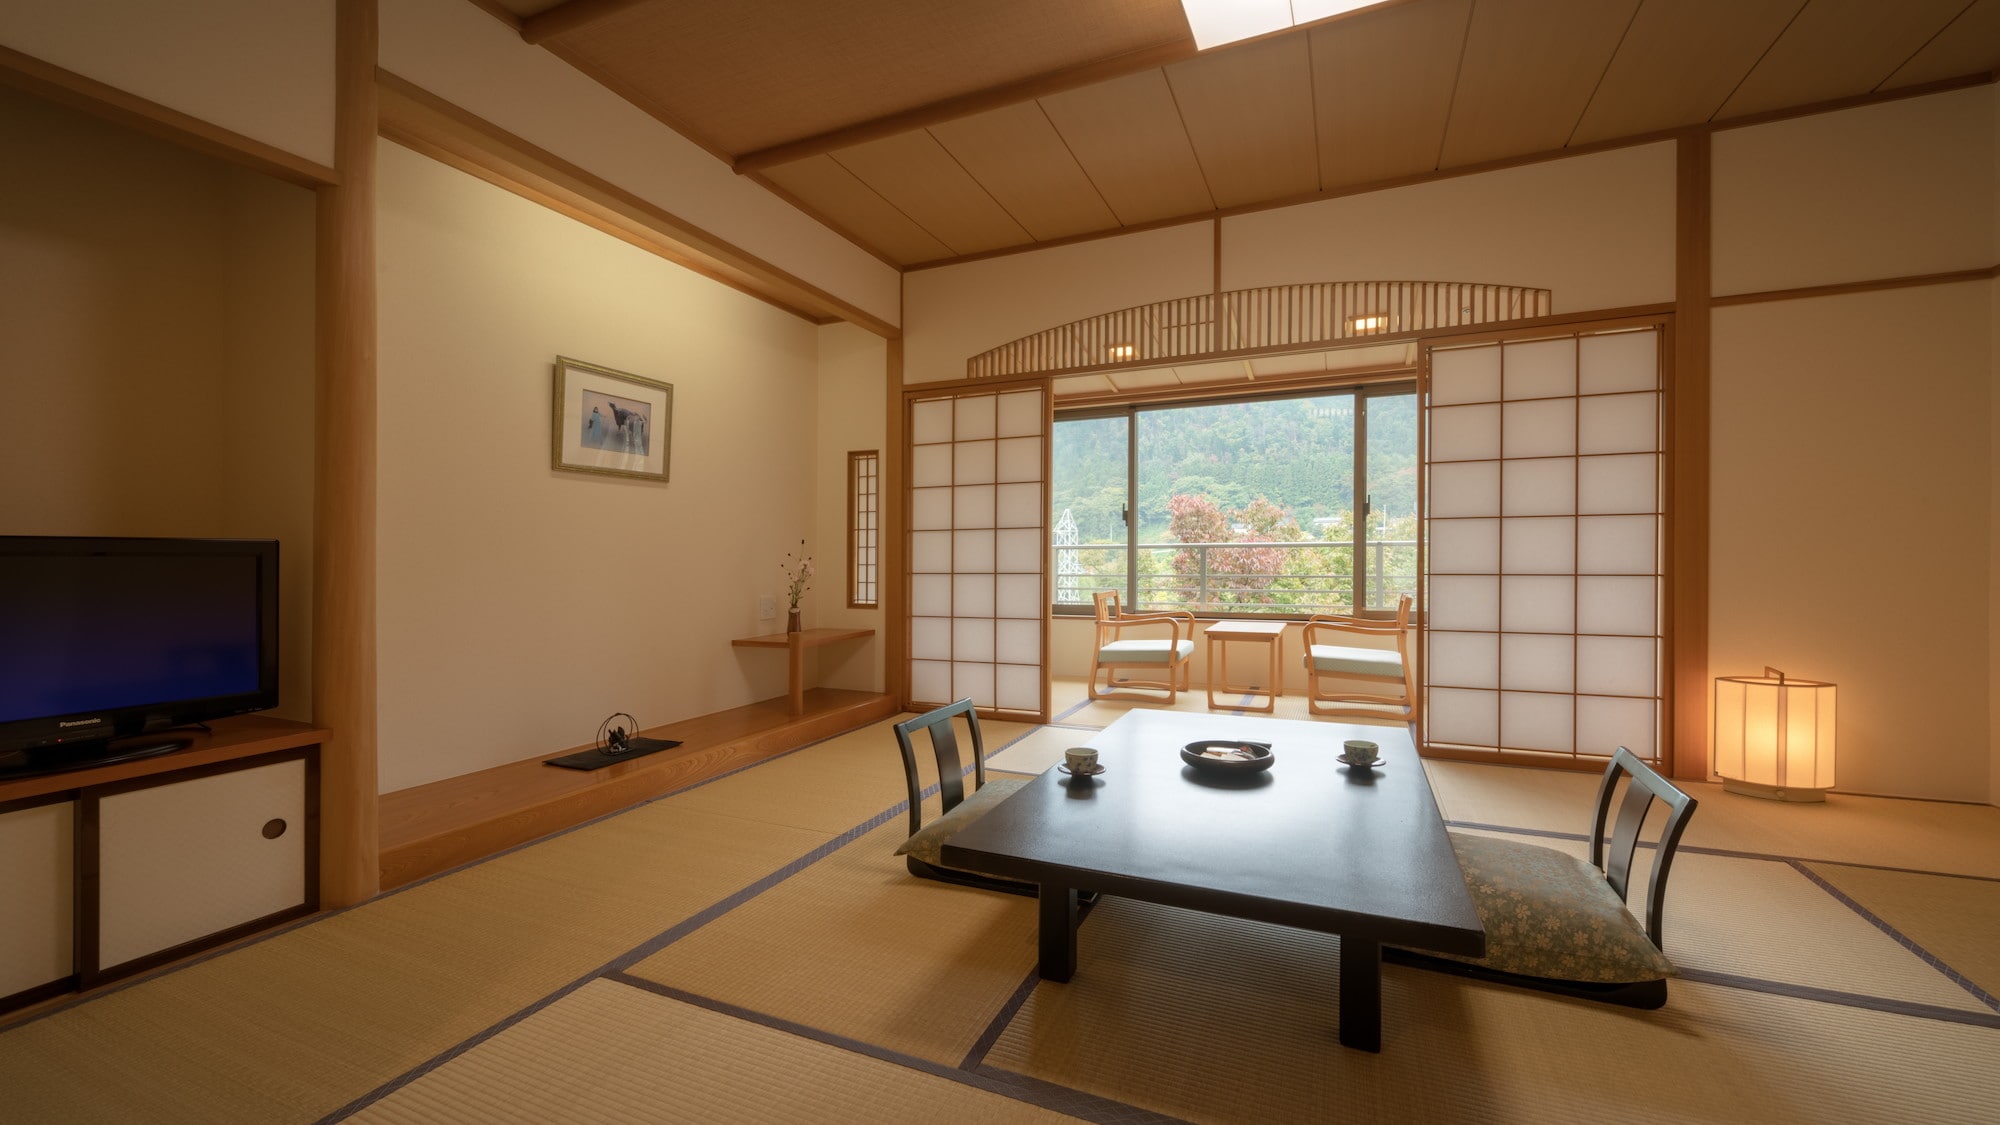 일본식 방. 일본의 전통적인 건축 양식의 스기야 구조로, 이풀의 향기에 싸여 있으면 느긋하게 보내 주세요.